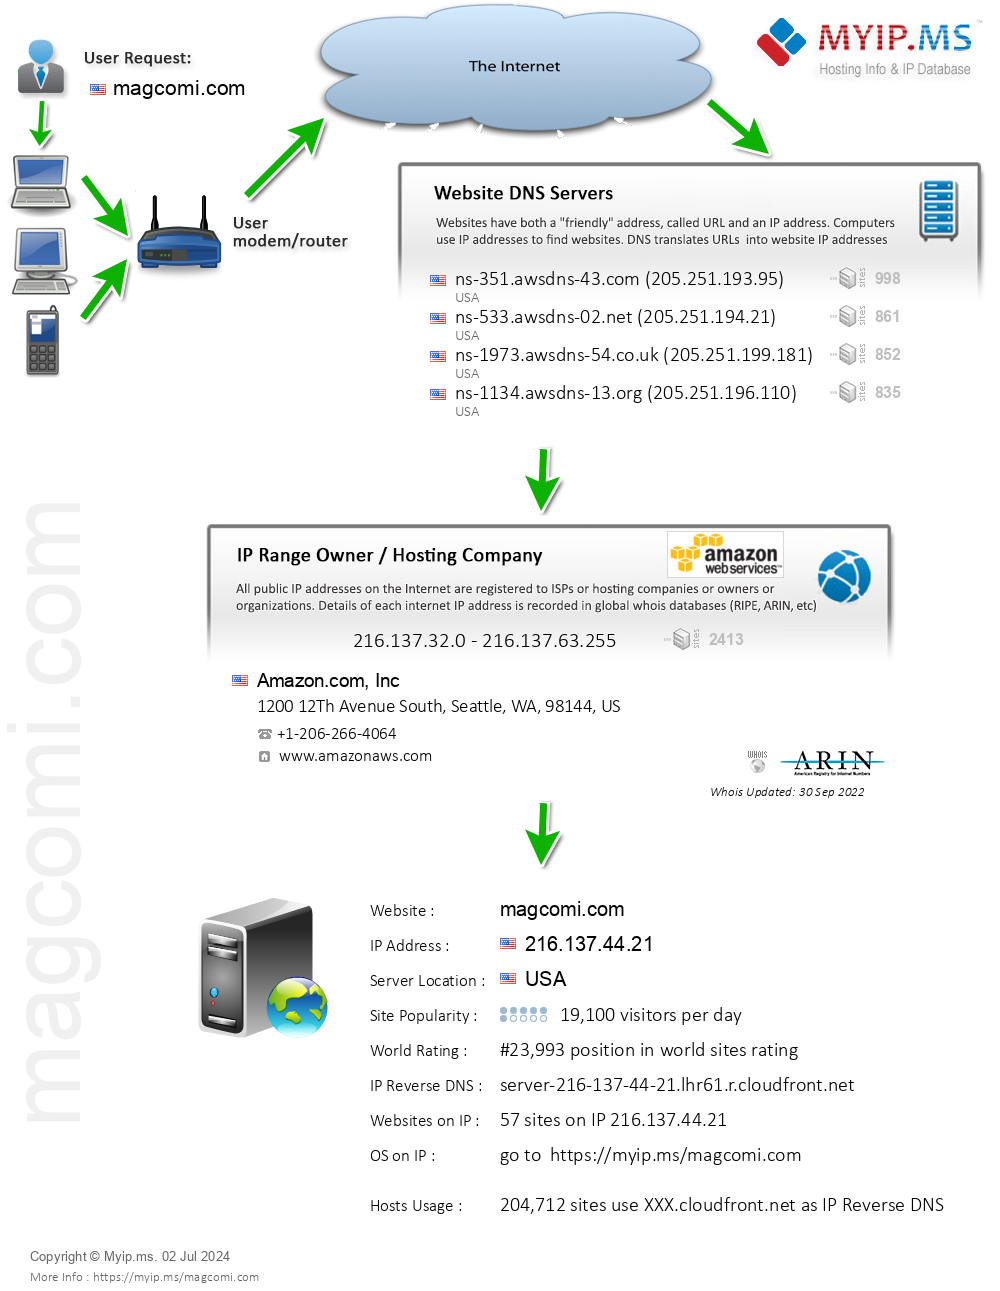 Magcomi.com - Website Hosting Visual IP Diagram